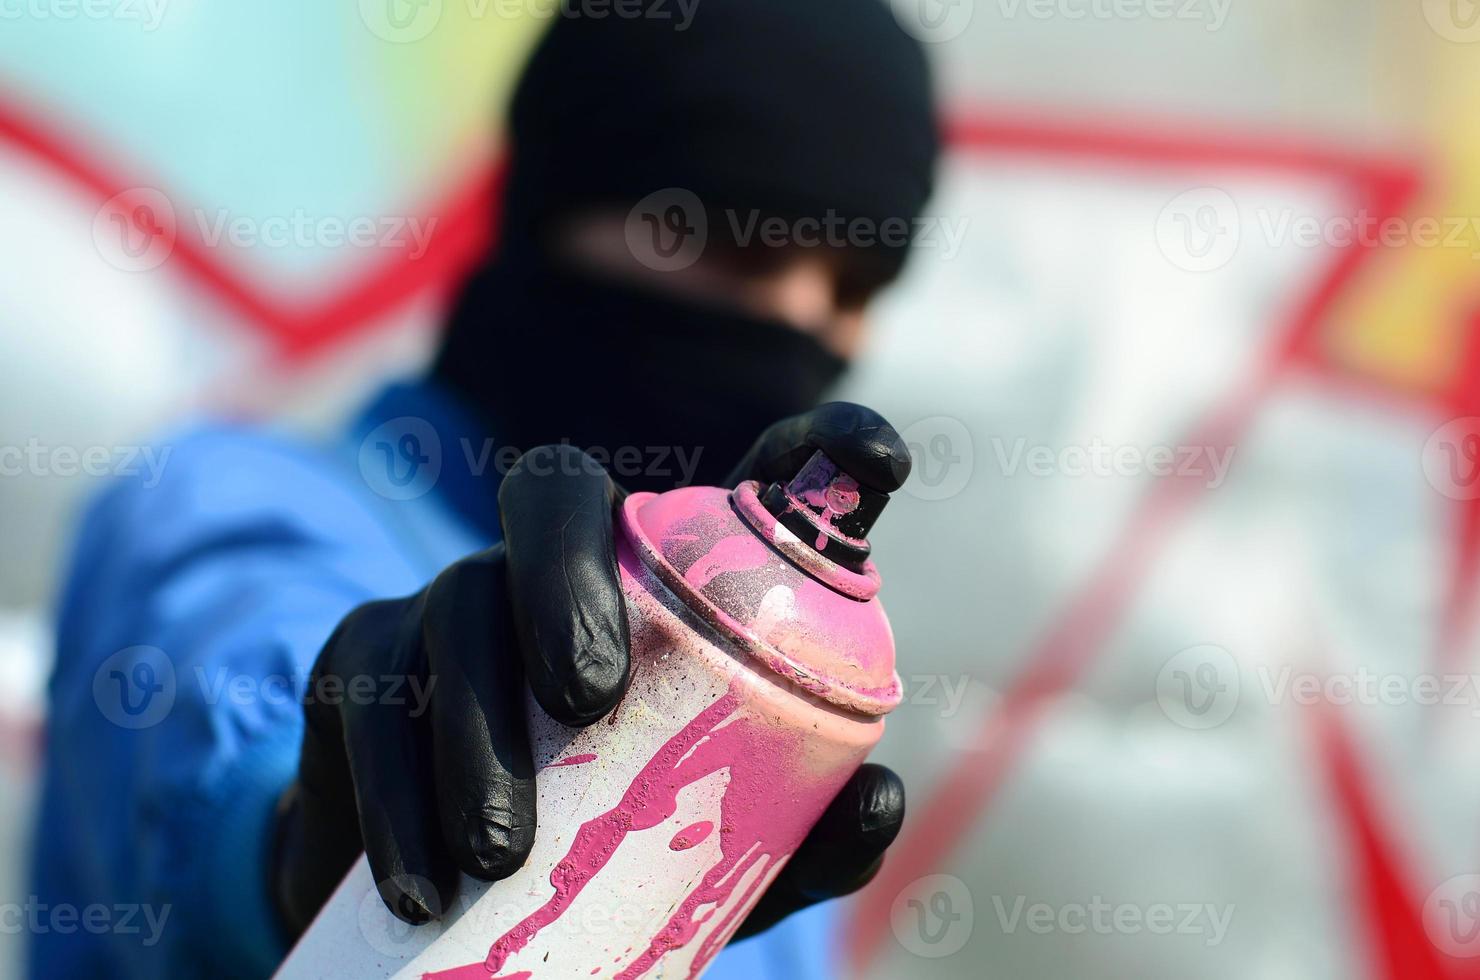 un joven artista de graffiti con una chaqueta azul y una máscara negra sostiene una lata de pintura frente a él contra un fondo de dibujo de graffiti de colores. concepto de arte callejero y vandalismo foto